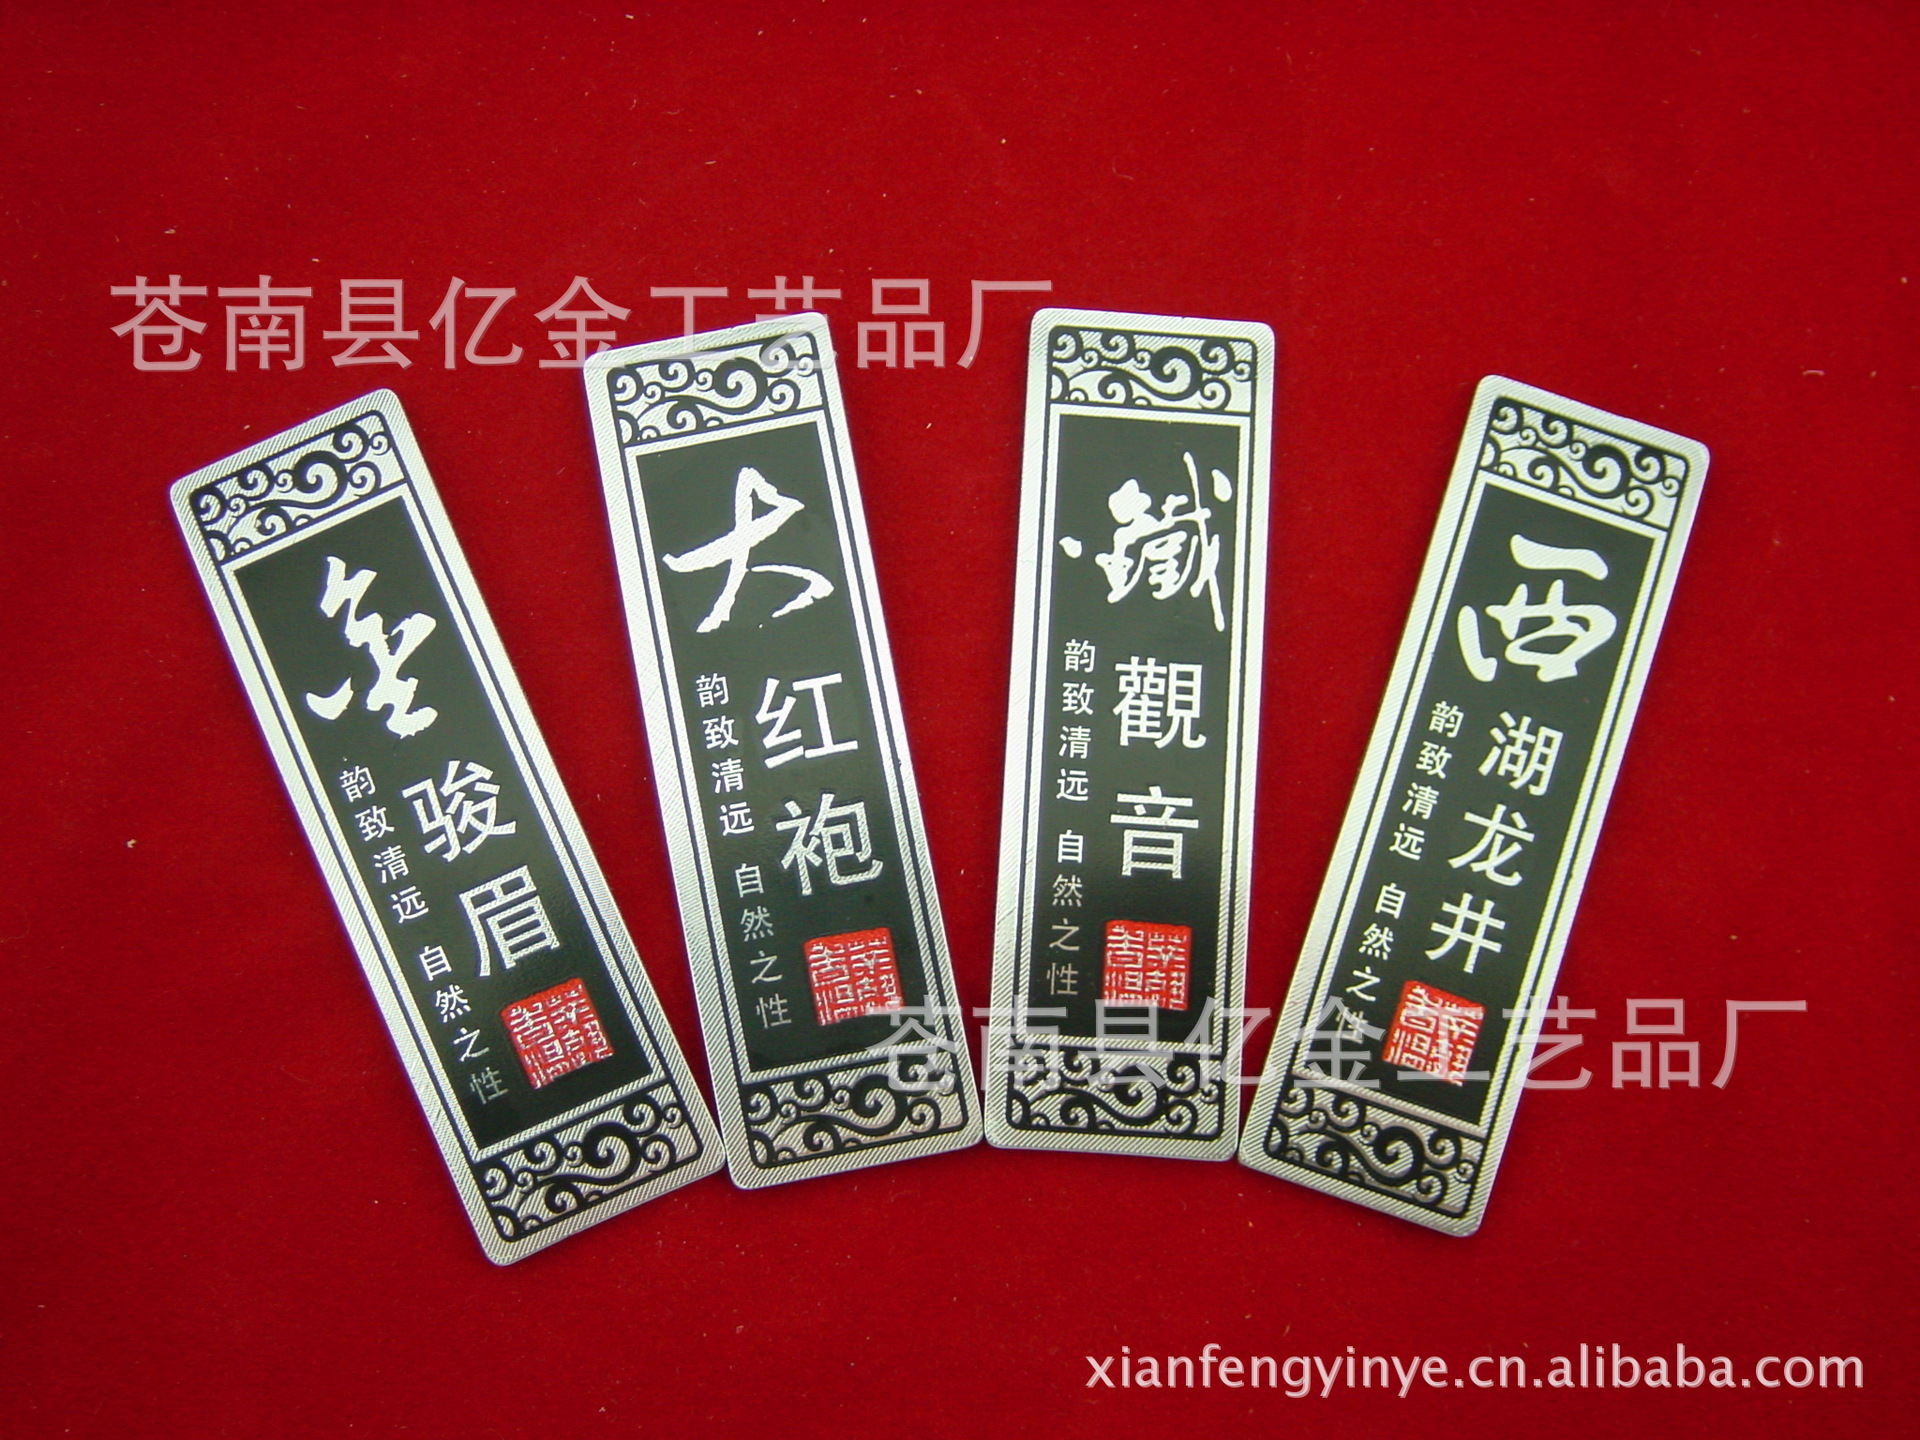 金駿眉四種茶標8.5X2.5CM (3)